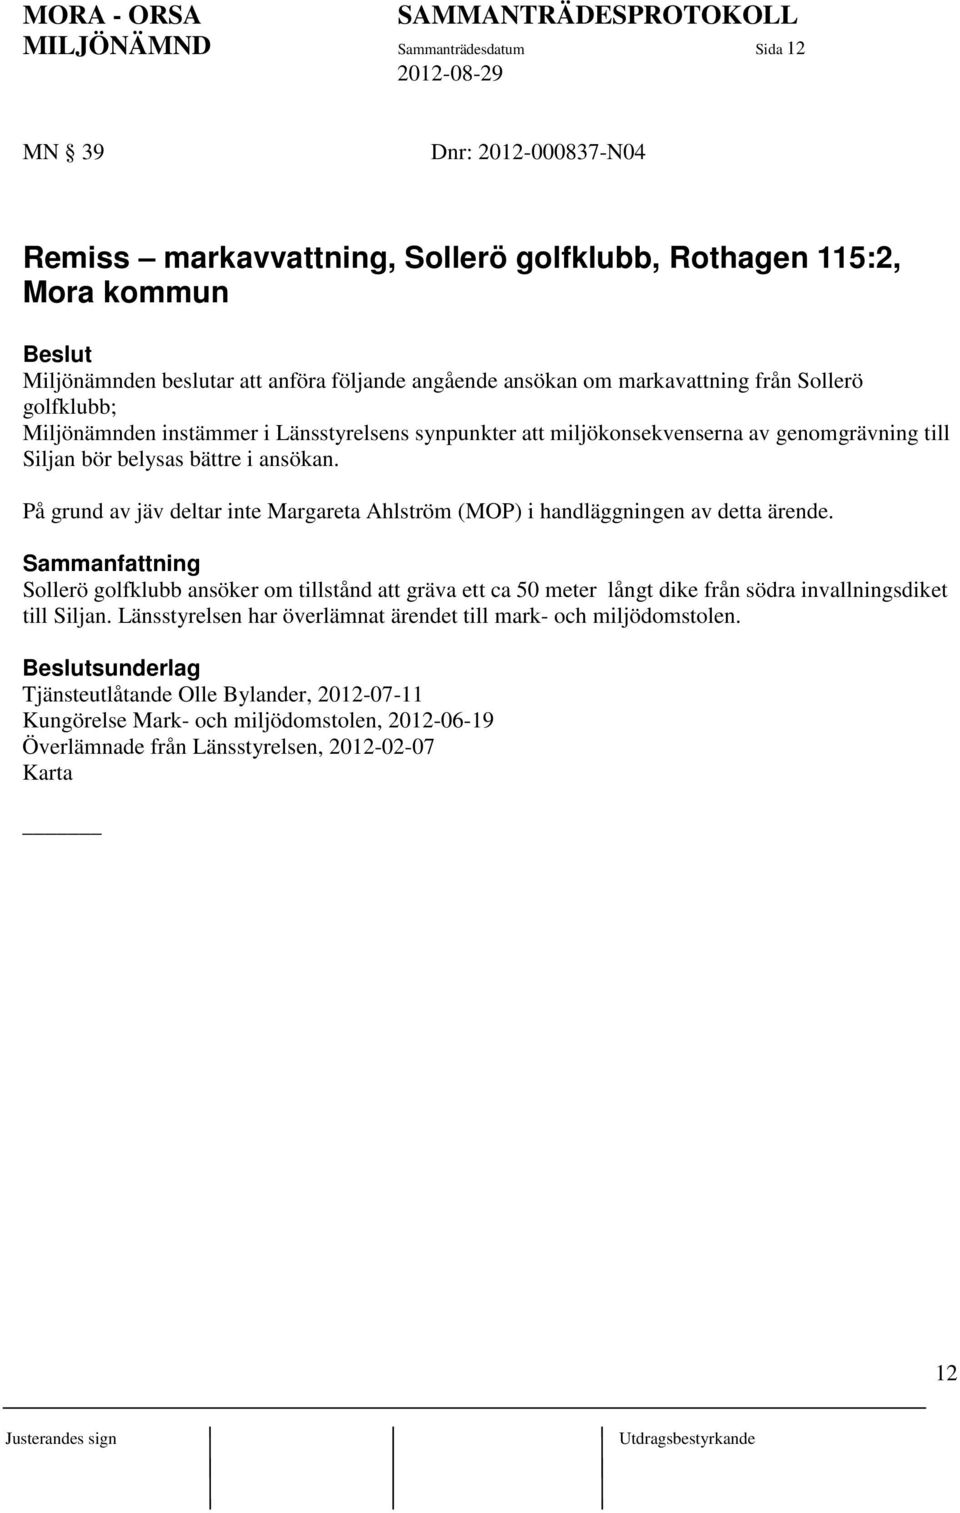 På grund av jäv deltar inte Margareta Ahlström (MOP) i handläggningen av detta ärende.